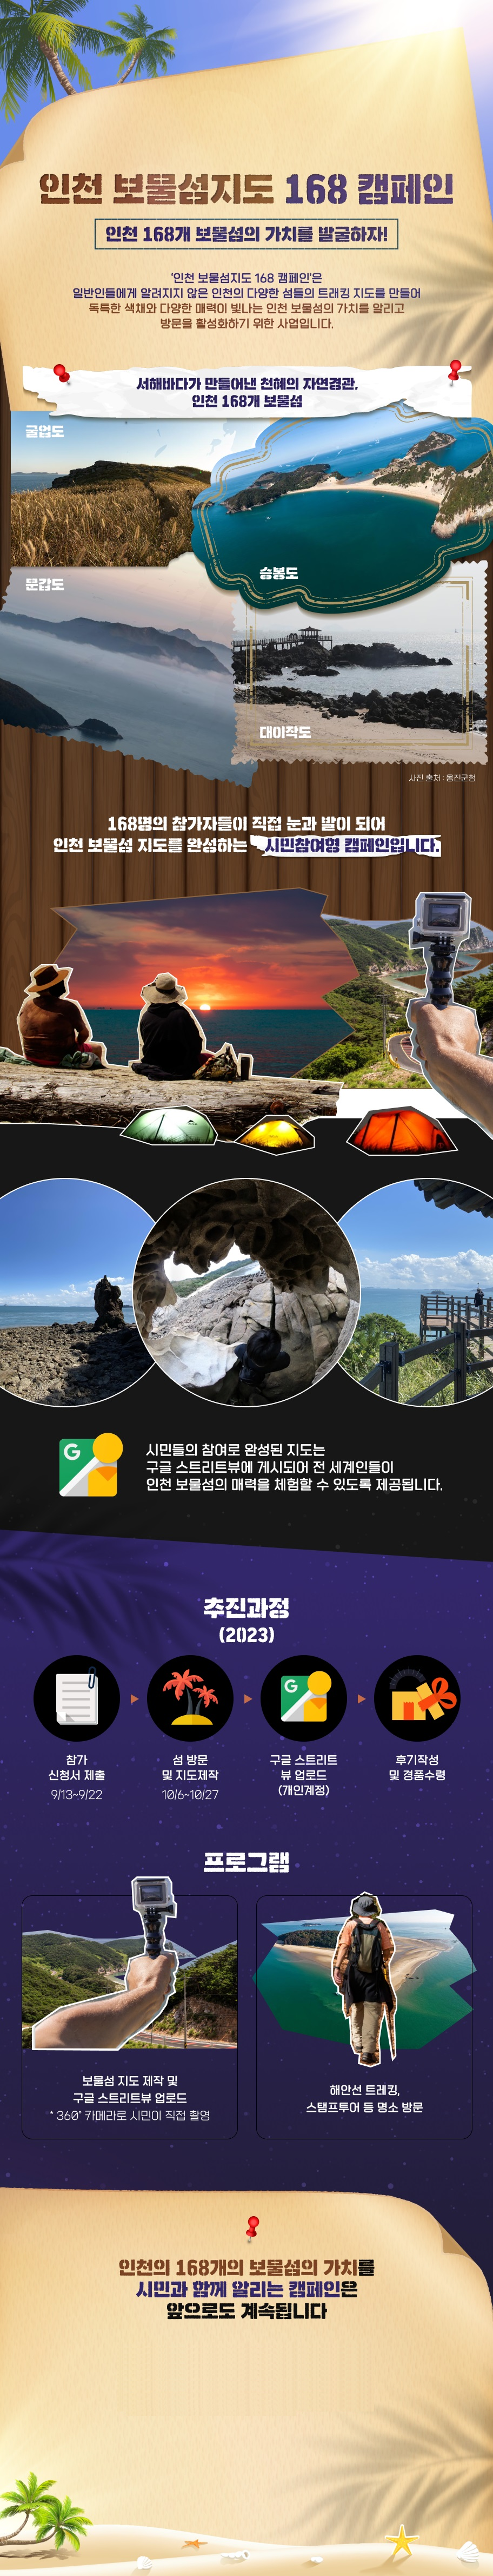 인천 보물섬지도 168 캠페인 인천 168개 보물섬의 가치를 발굴하자!